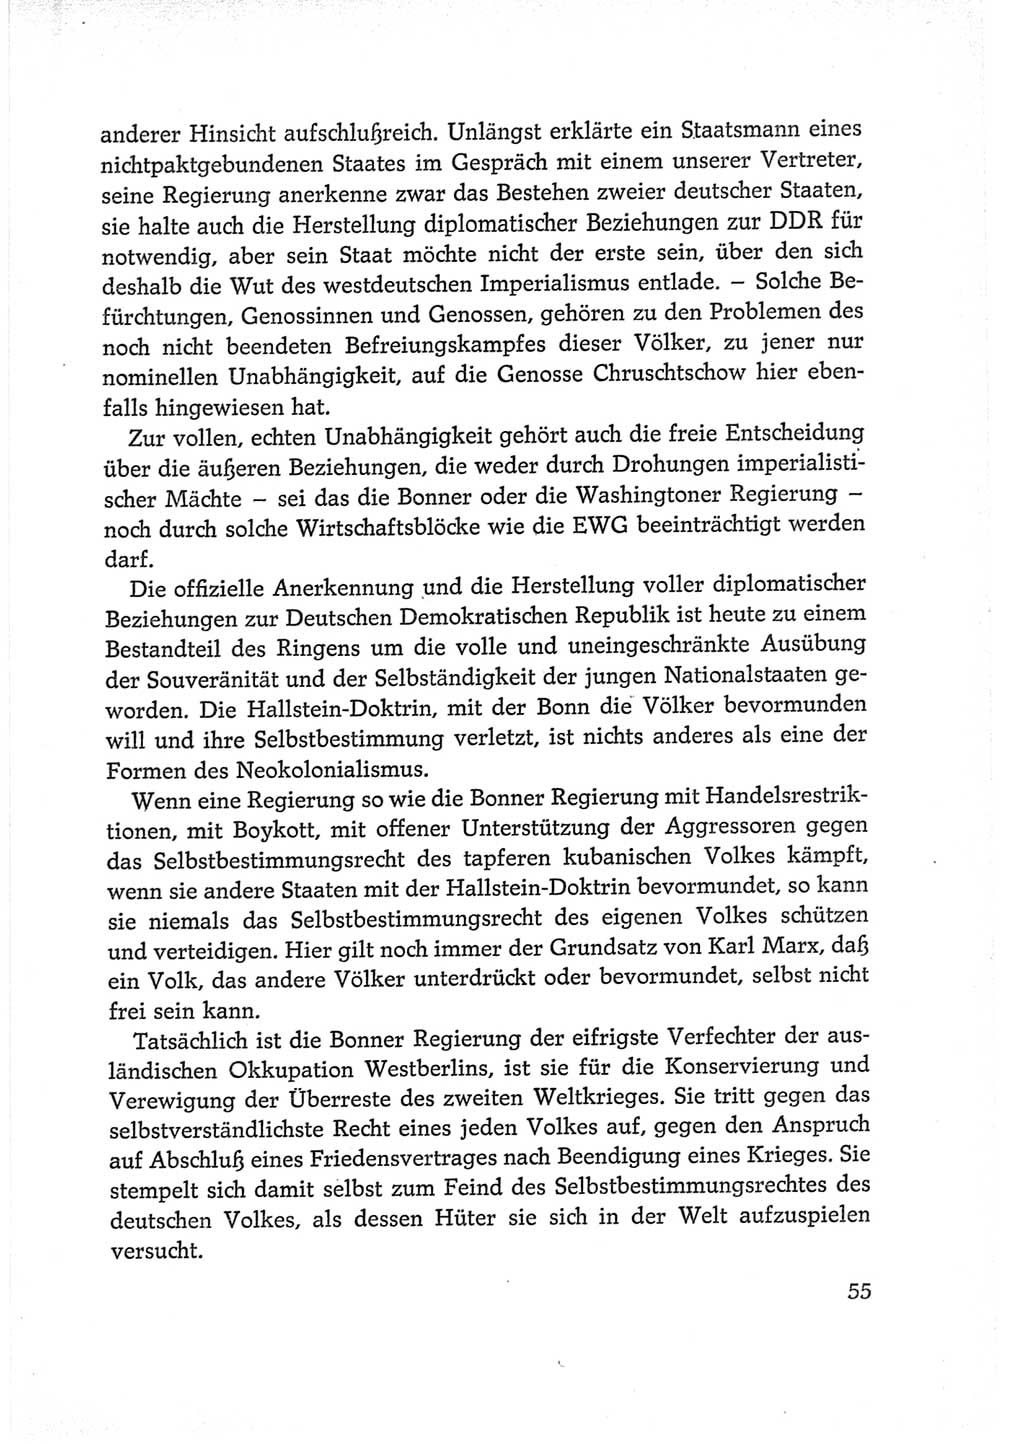 Protokoll der Verhandlungen des Ⅵ. Parteitages der Sozialistischen Einheitspartei Deutschlands (SED) [Deutsche Demokratische Republik (DDR)] 1963, Band Ⅱ, Seite 55 (Prot. Verh. Ⅵ. PT SED DDR 1963, Bd. Ⅱ, S. 55)